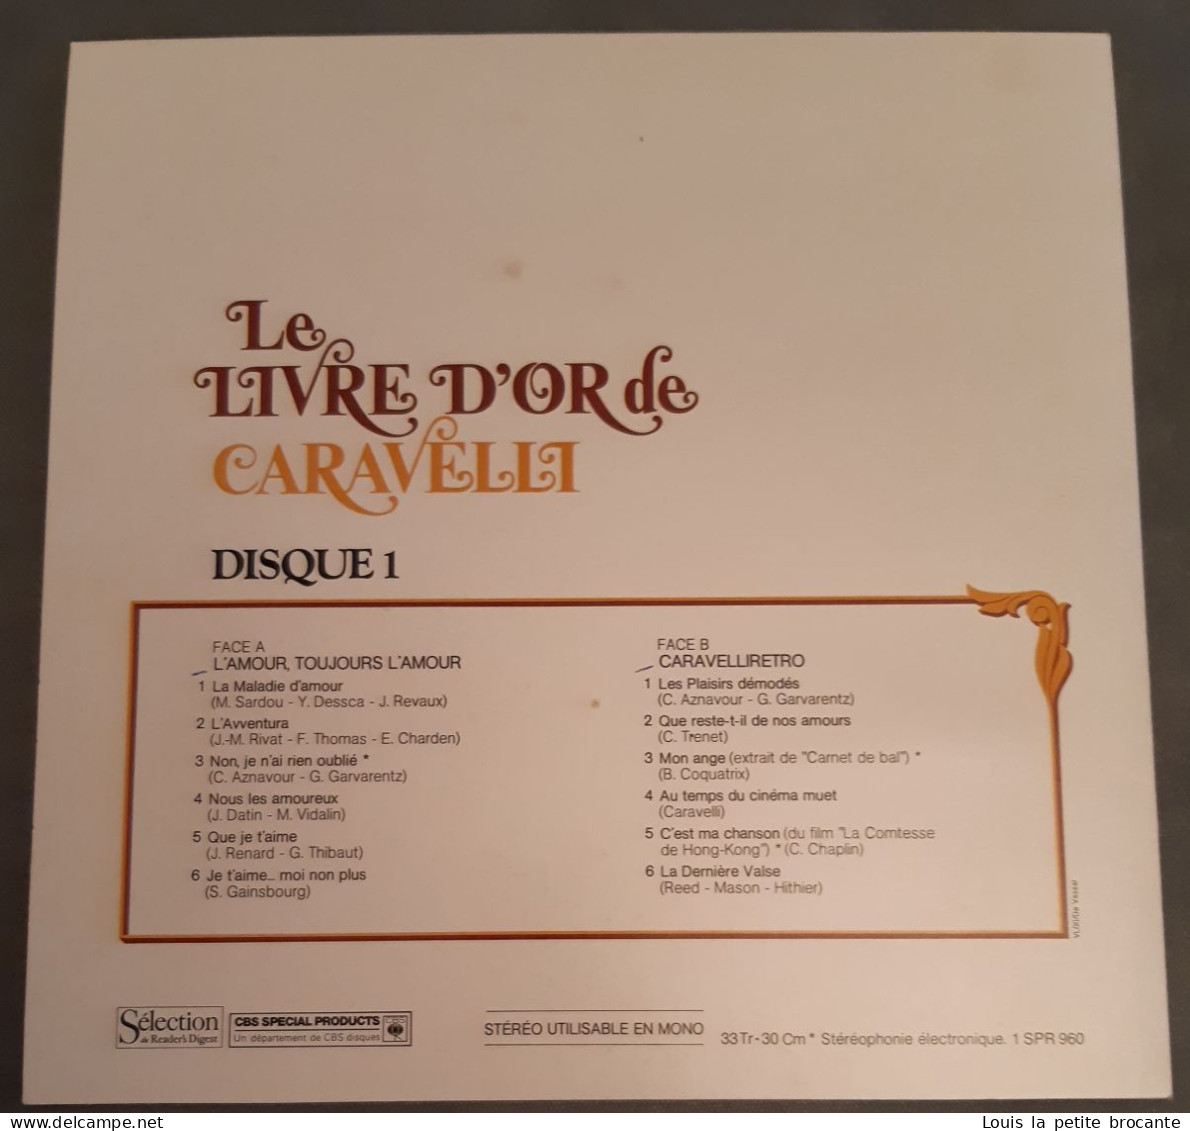 Coffret de 9 disques vinyles, LIVRE D'OR DE CARAVELLI, CBS - série SPR 960 - Sélection du Reader's Digest, enregistré en